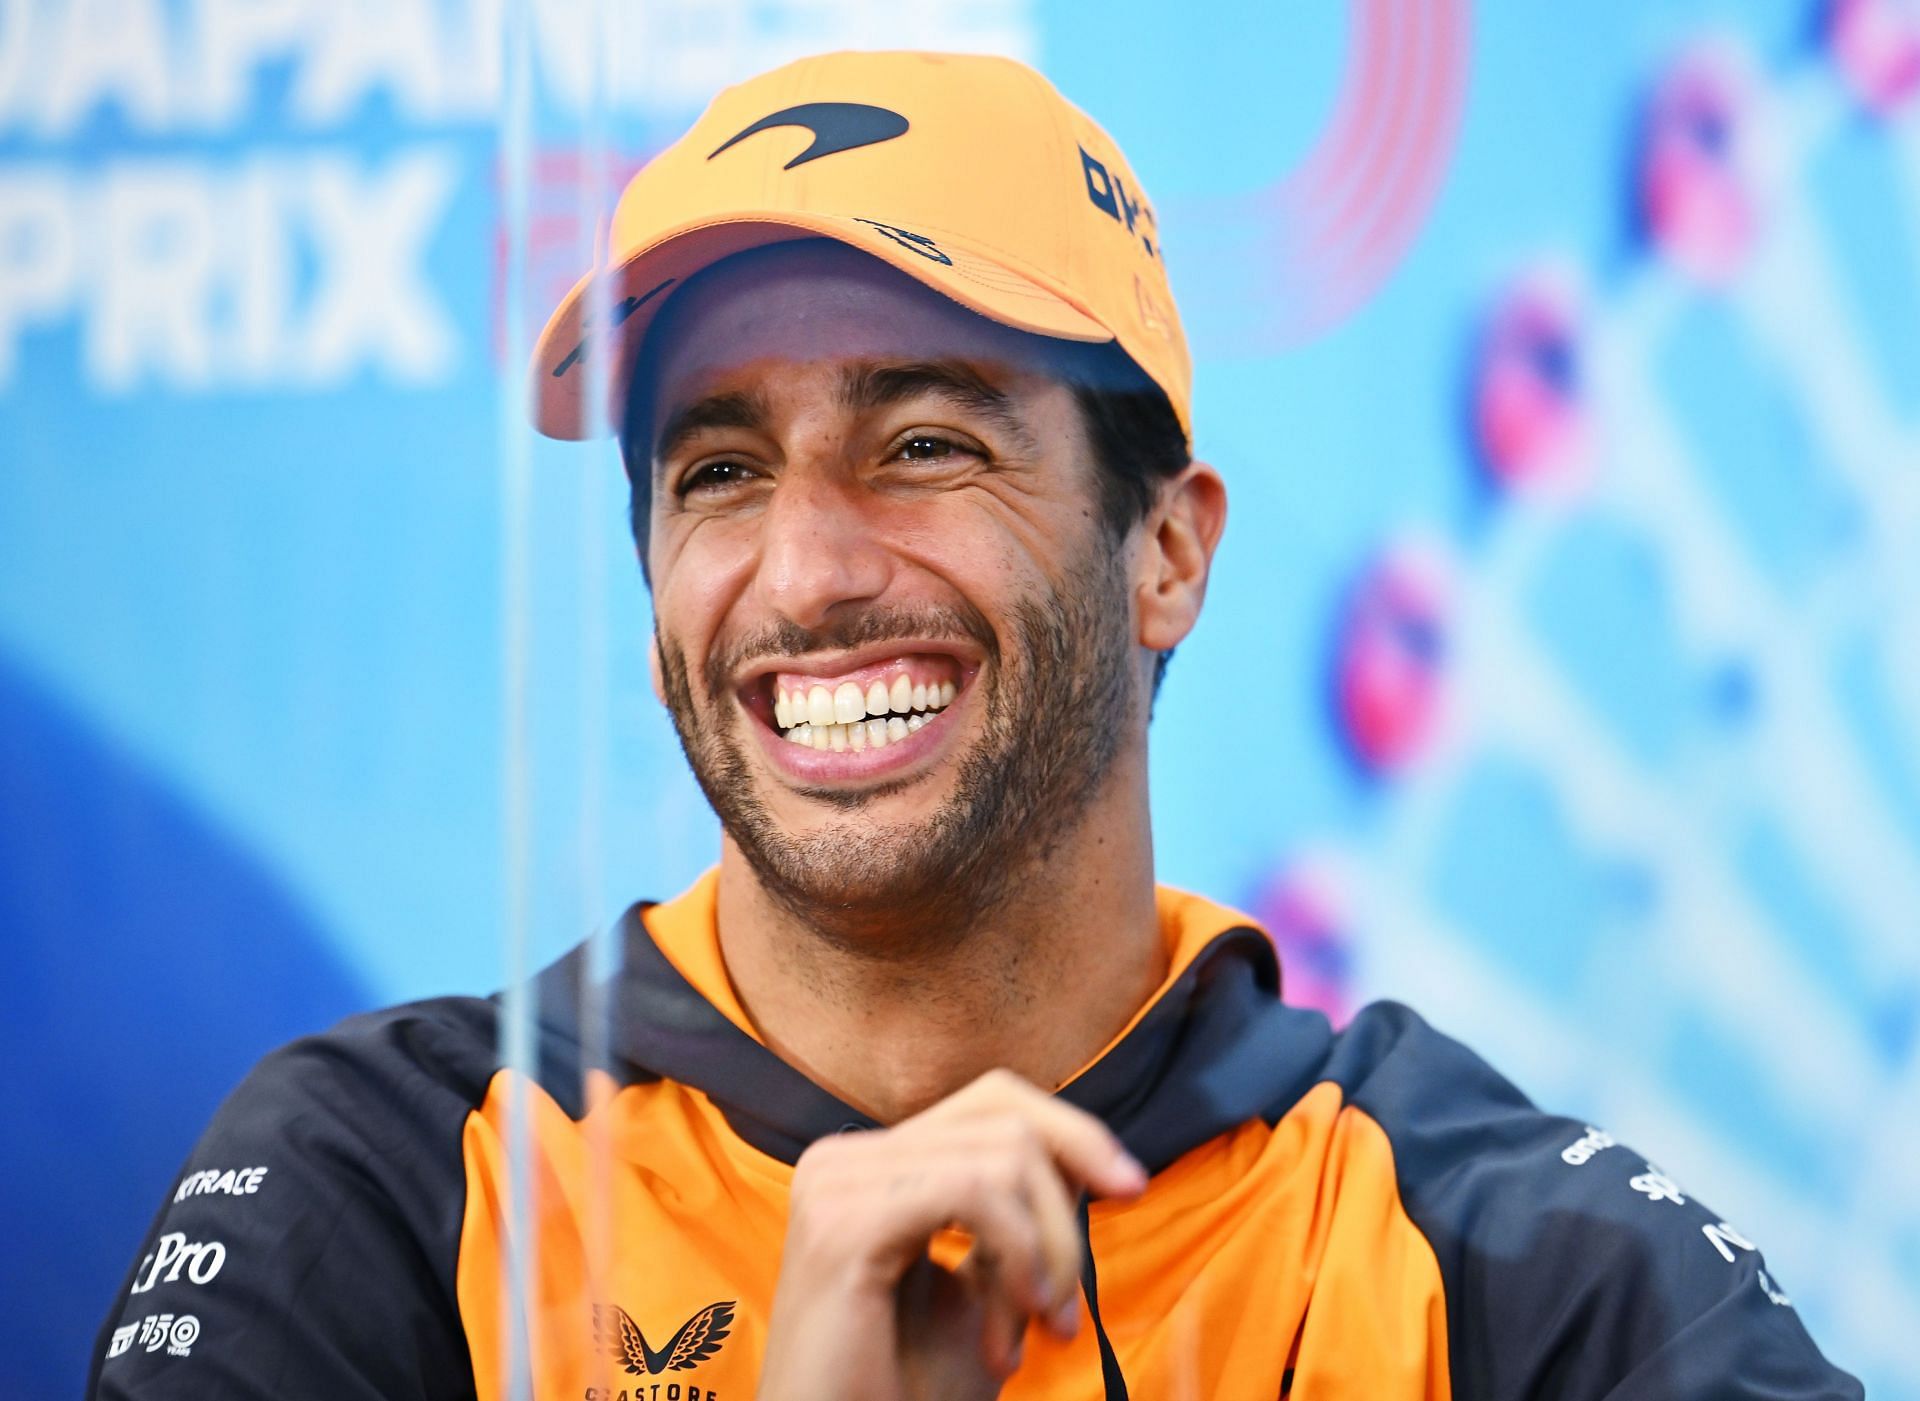 Daniel Ricciardo under no pressure to decide F1 future